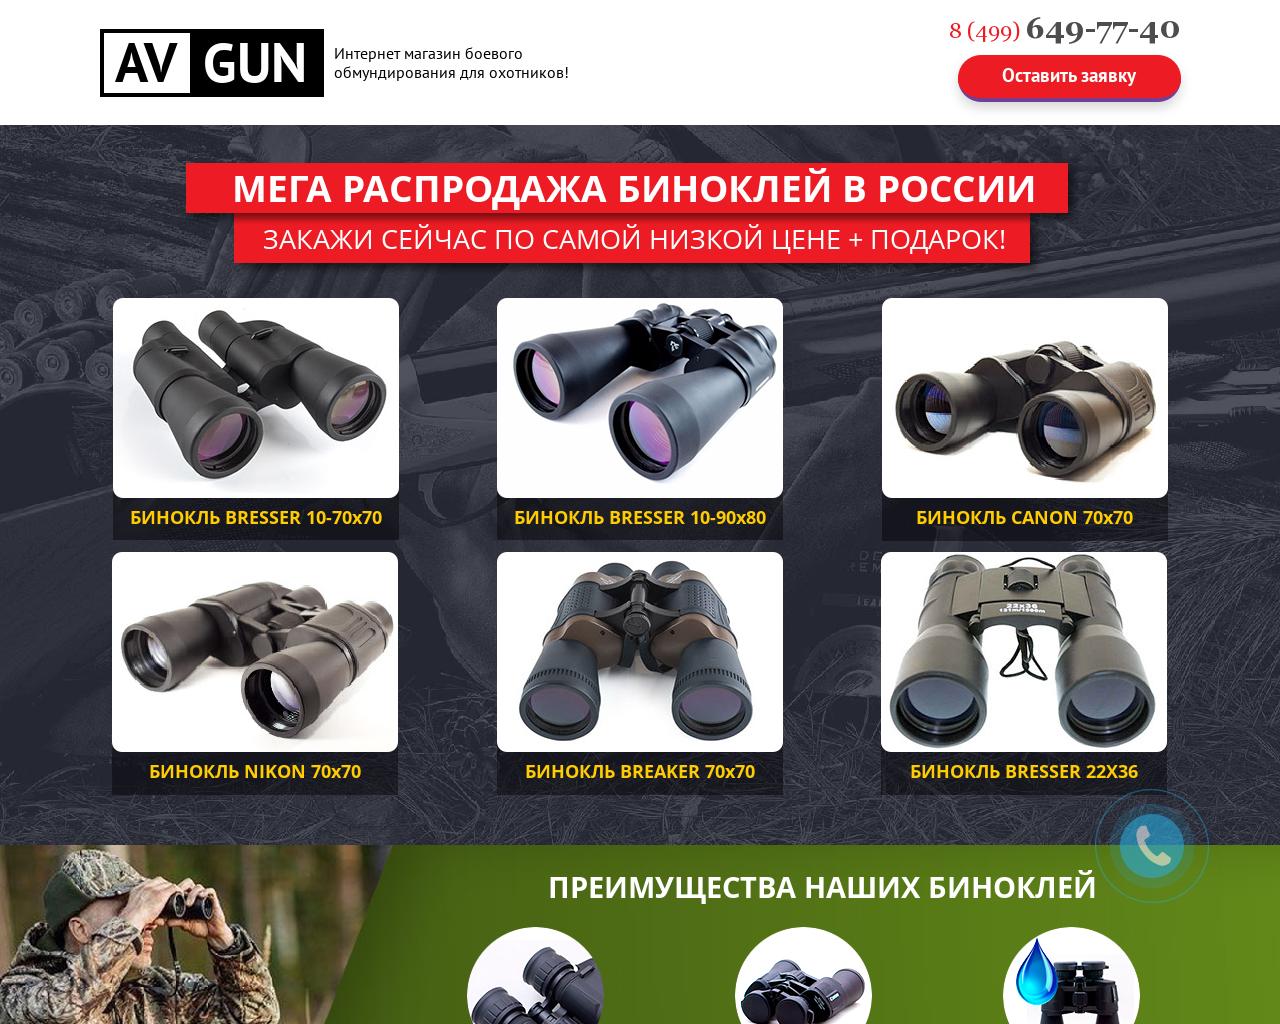 Изображение сайта avgun.ru в разрешении 1280x1024